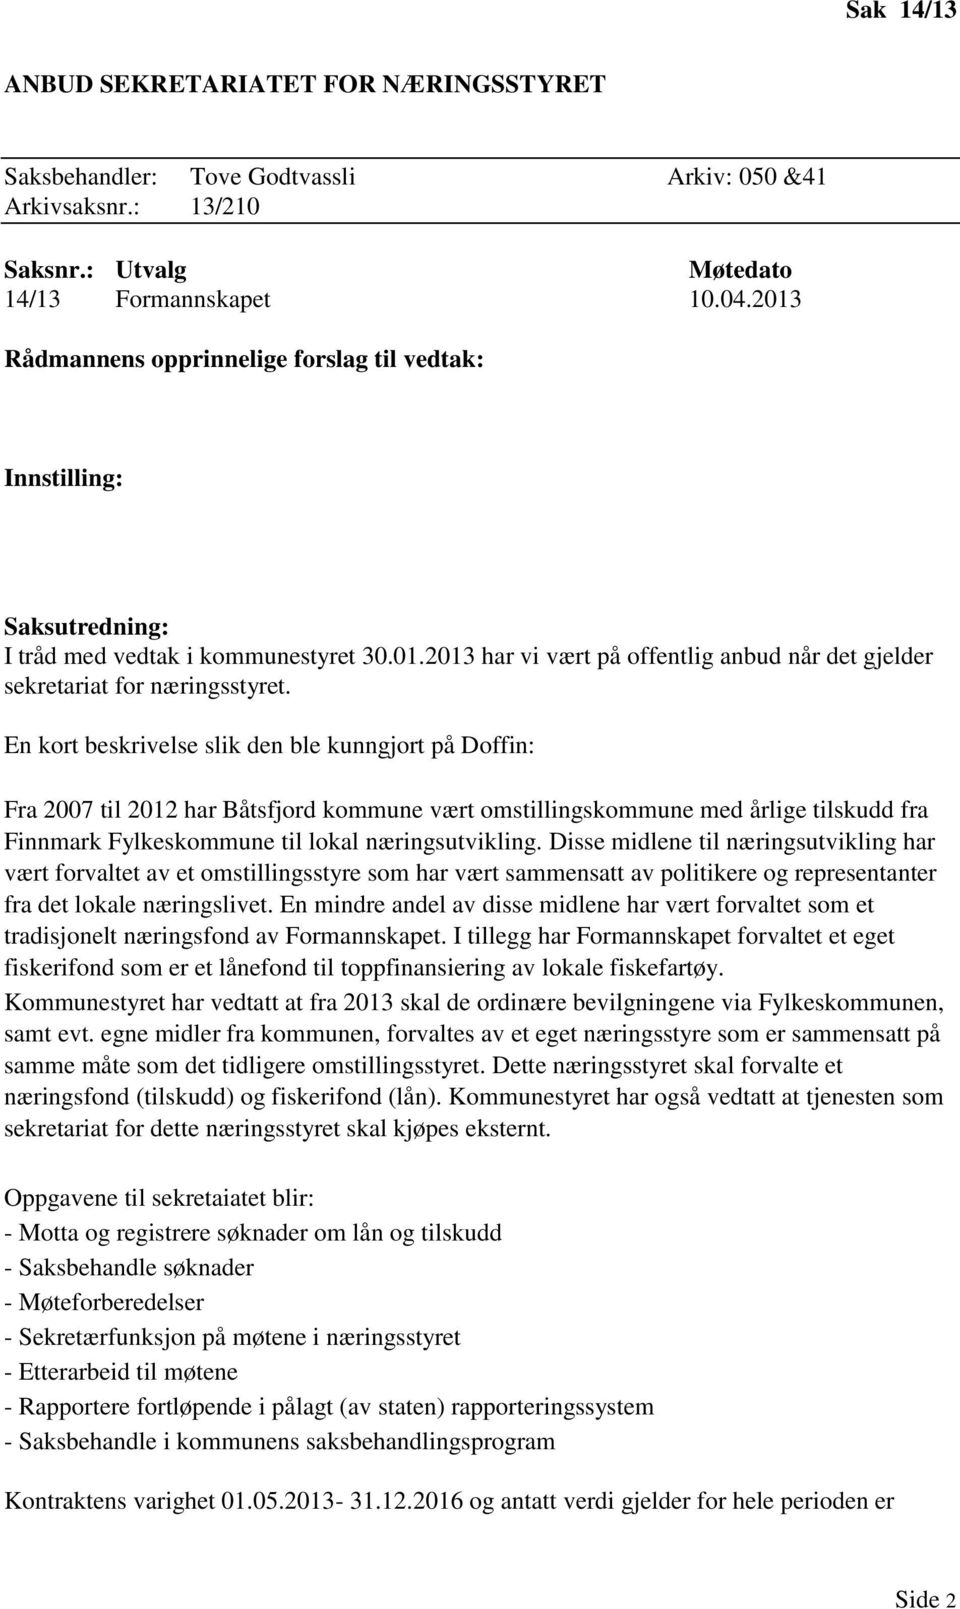 En kort beskrivelse slik den ble kunngjort på Doffin: Fra 2007 til 2012 har Båtsfjord kommune vært omstillingskommune med årlige tilskudd fra Finnmark Fylkeskommune til lokal næringsutvikling.